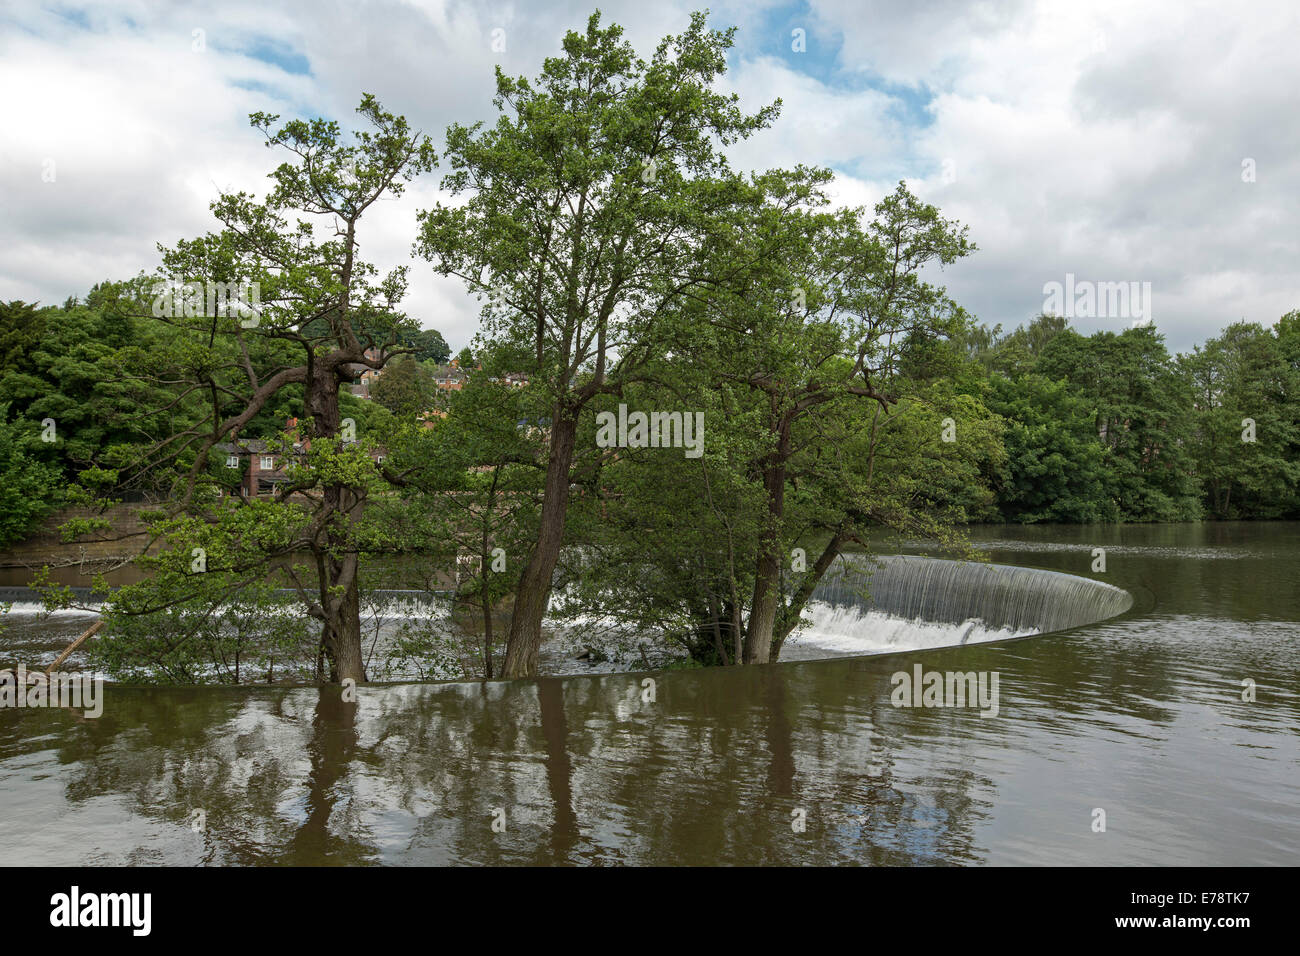 Río Derwent se extendieran con forma de herradura, weir en pueblo inglés de Belper con árboles de ribera se refleja en aguas tranquilas Foto de stock